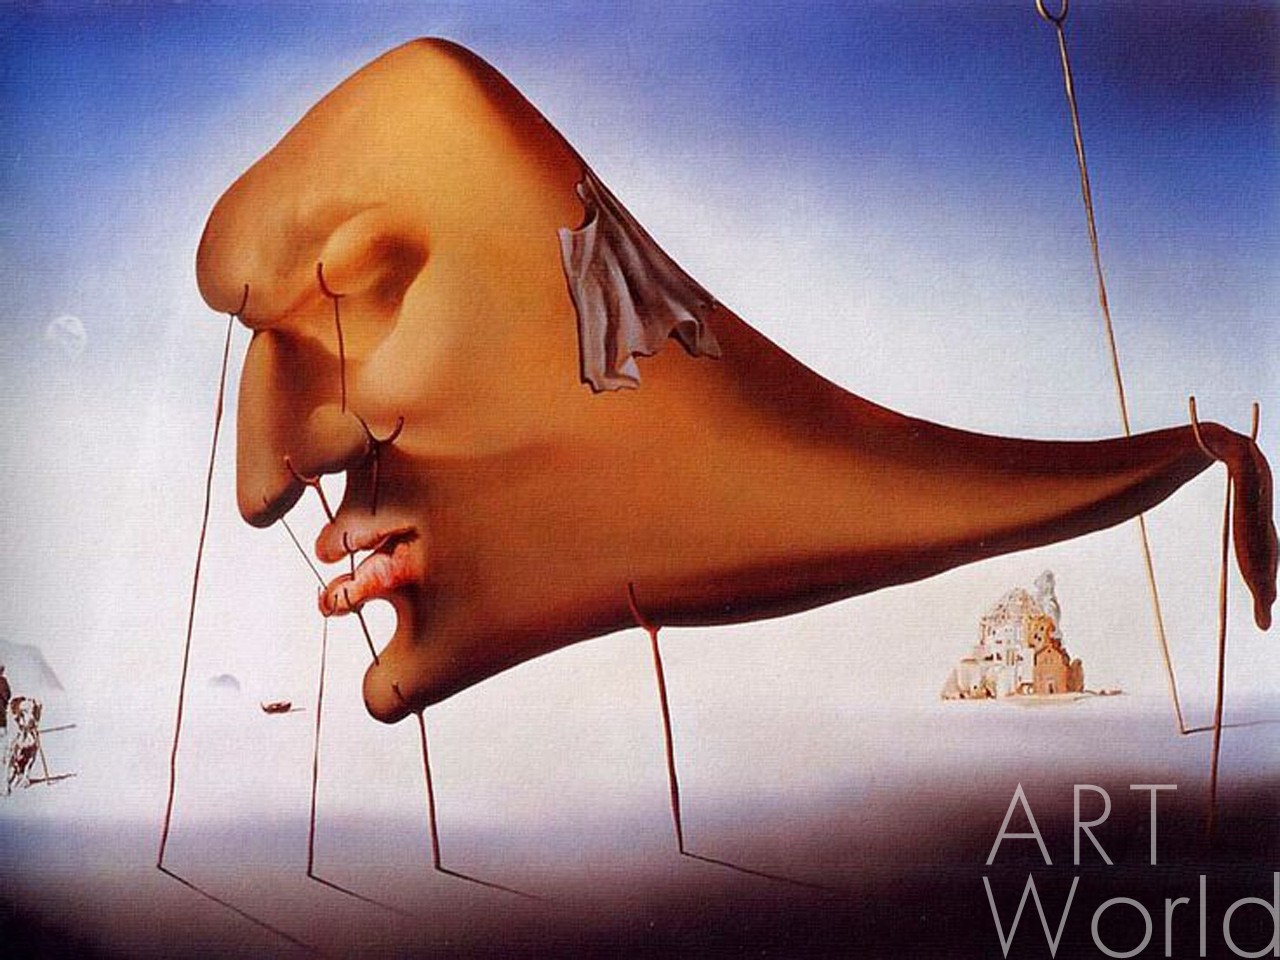 картина масло холст Картина маслом "Сон", копия картины Сальвадора Дали, Дали Сальвадор (Salvador Dalí) Артворлд.ру